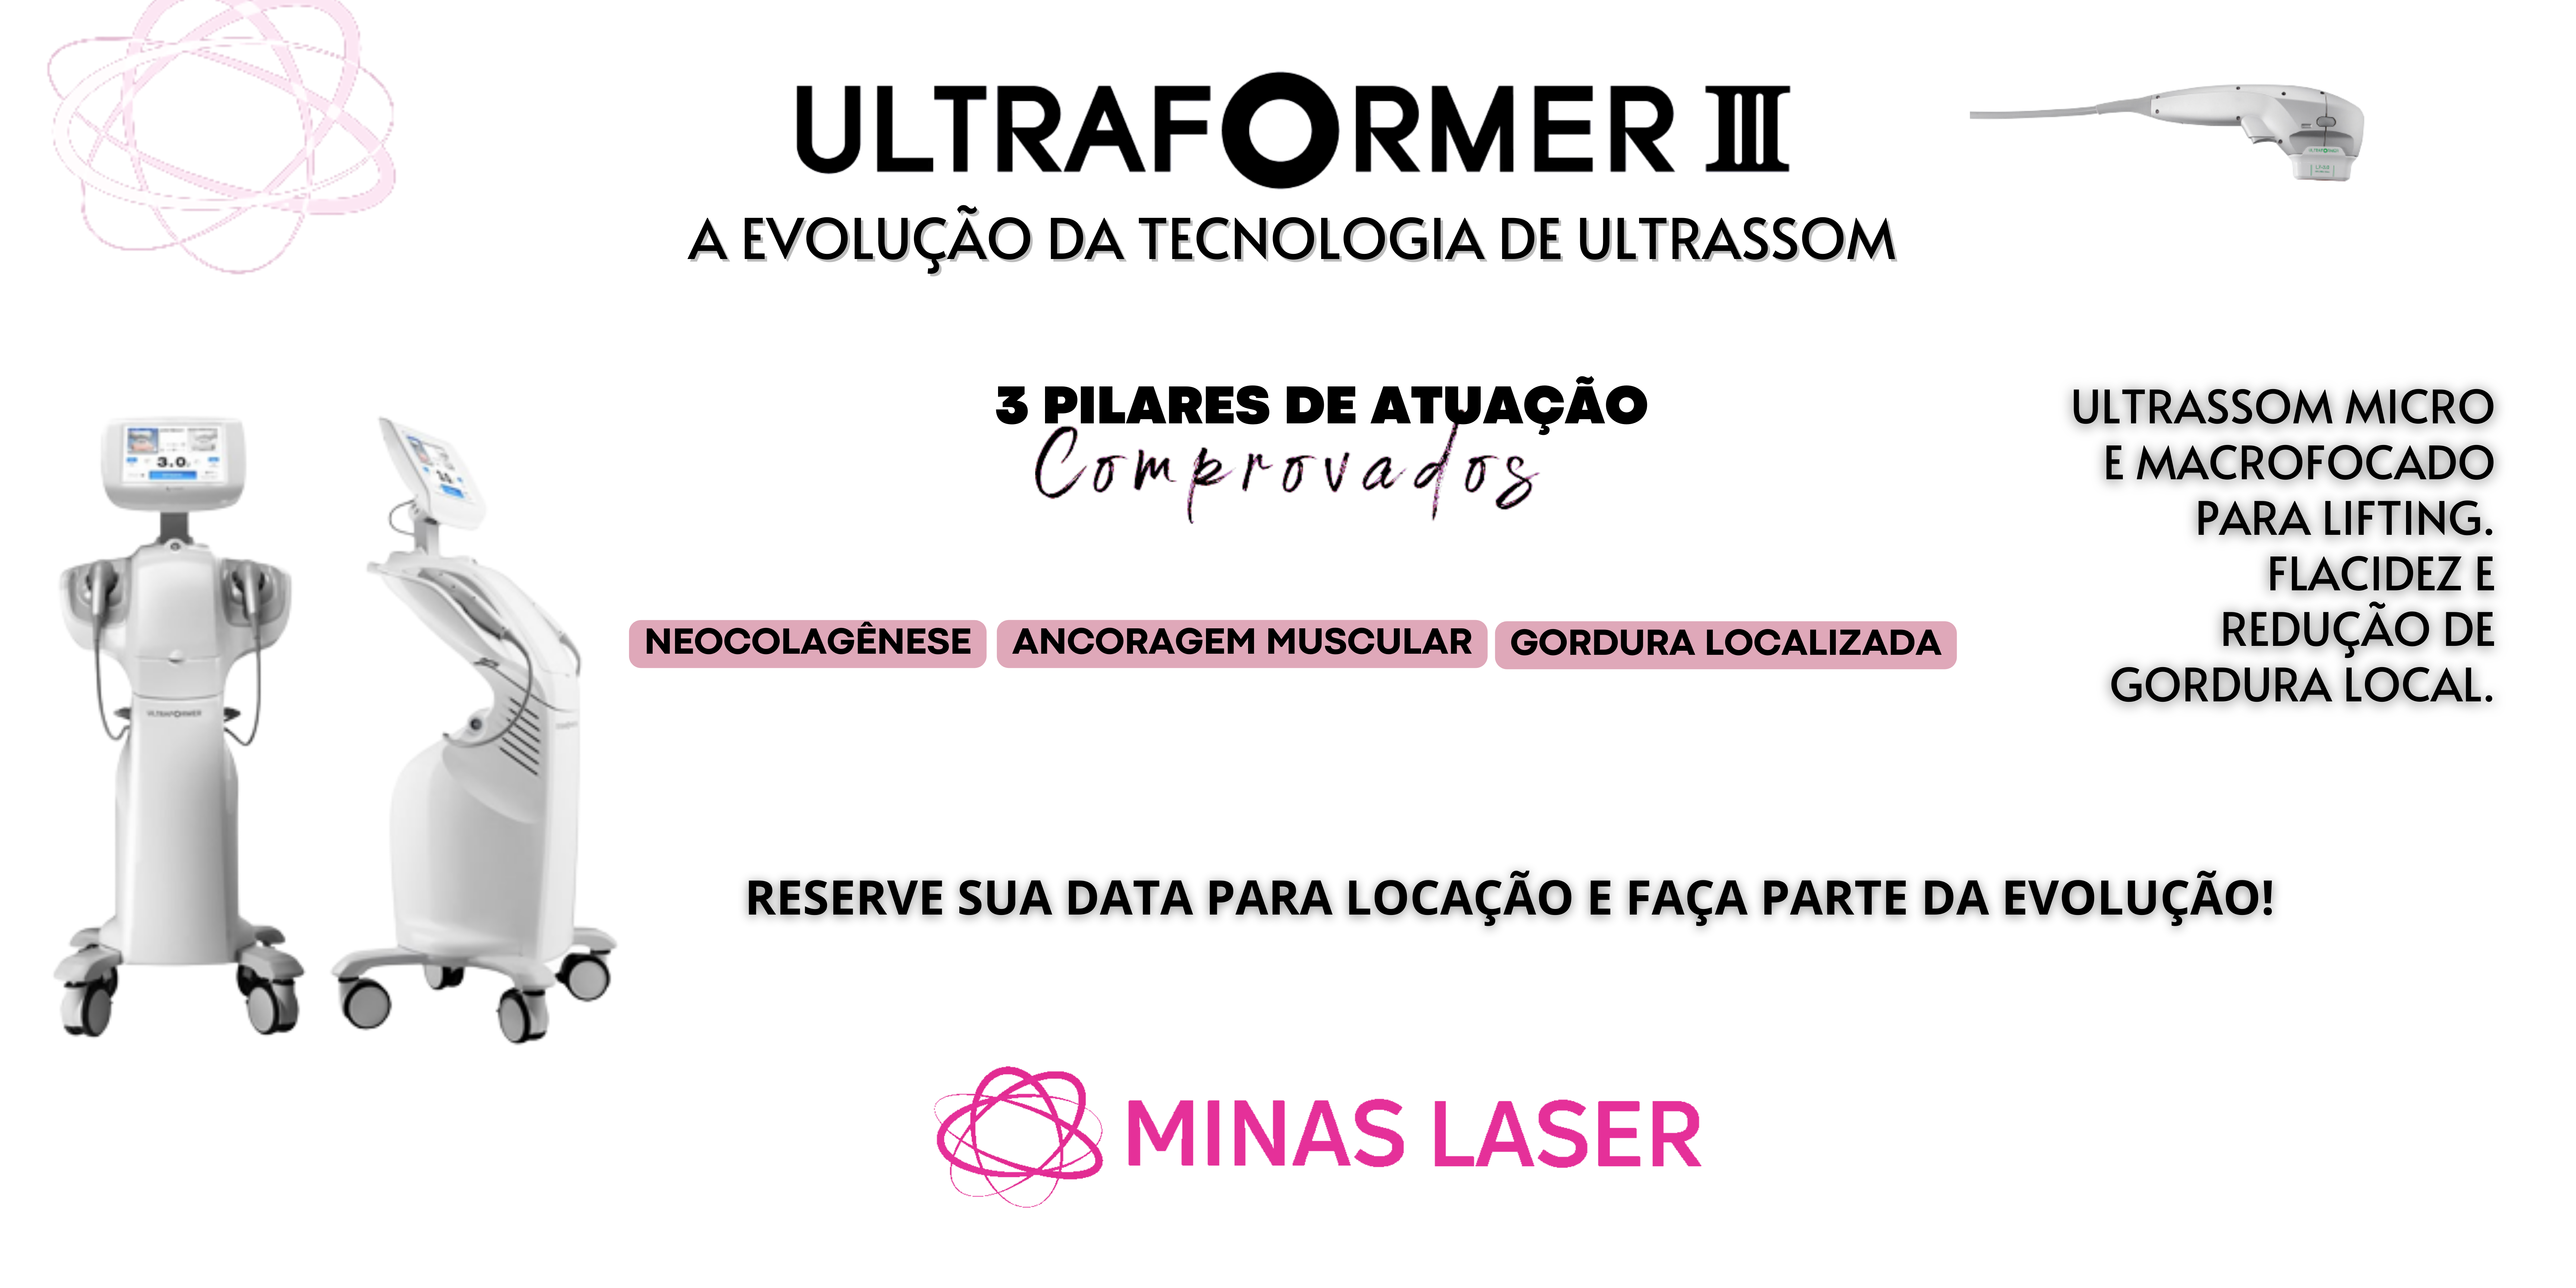 O protocolo Ultra Braços de Ultraformer III é um protocolo indicado pa